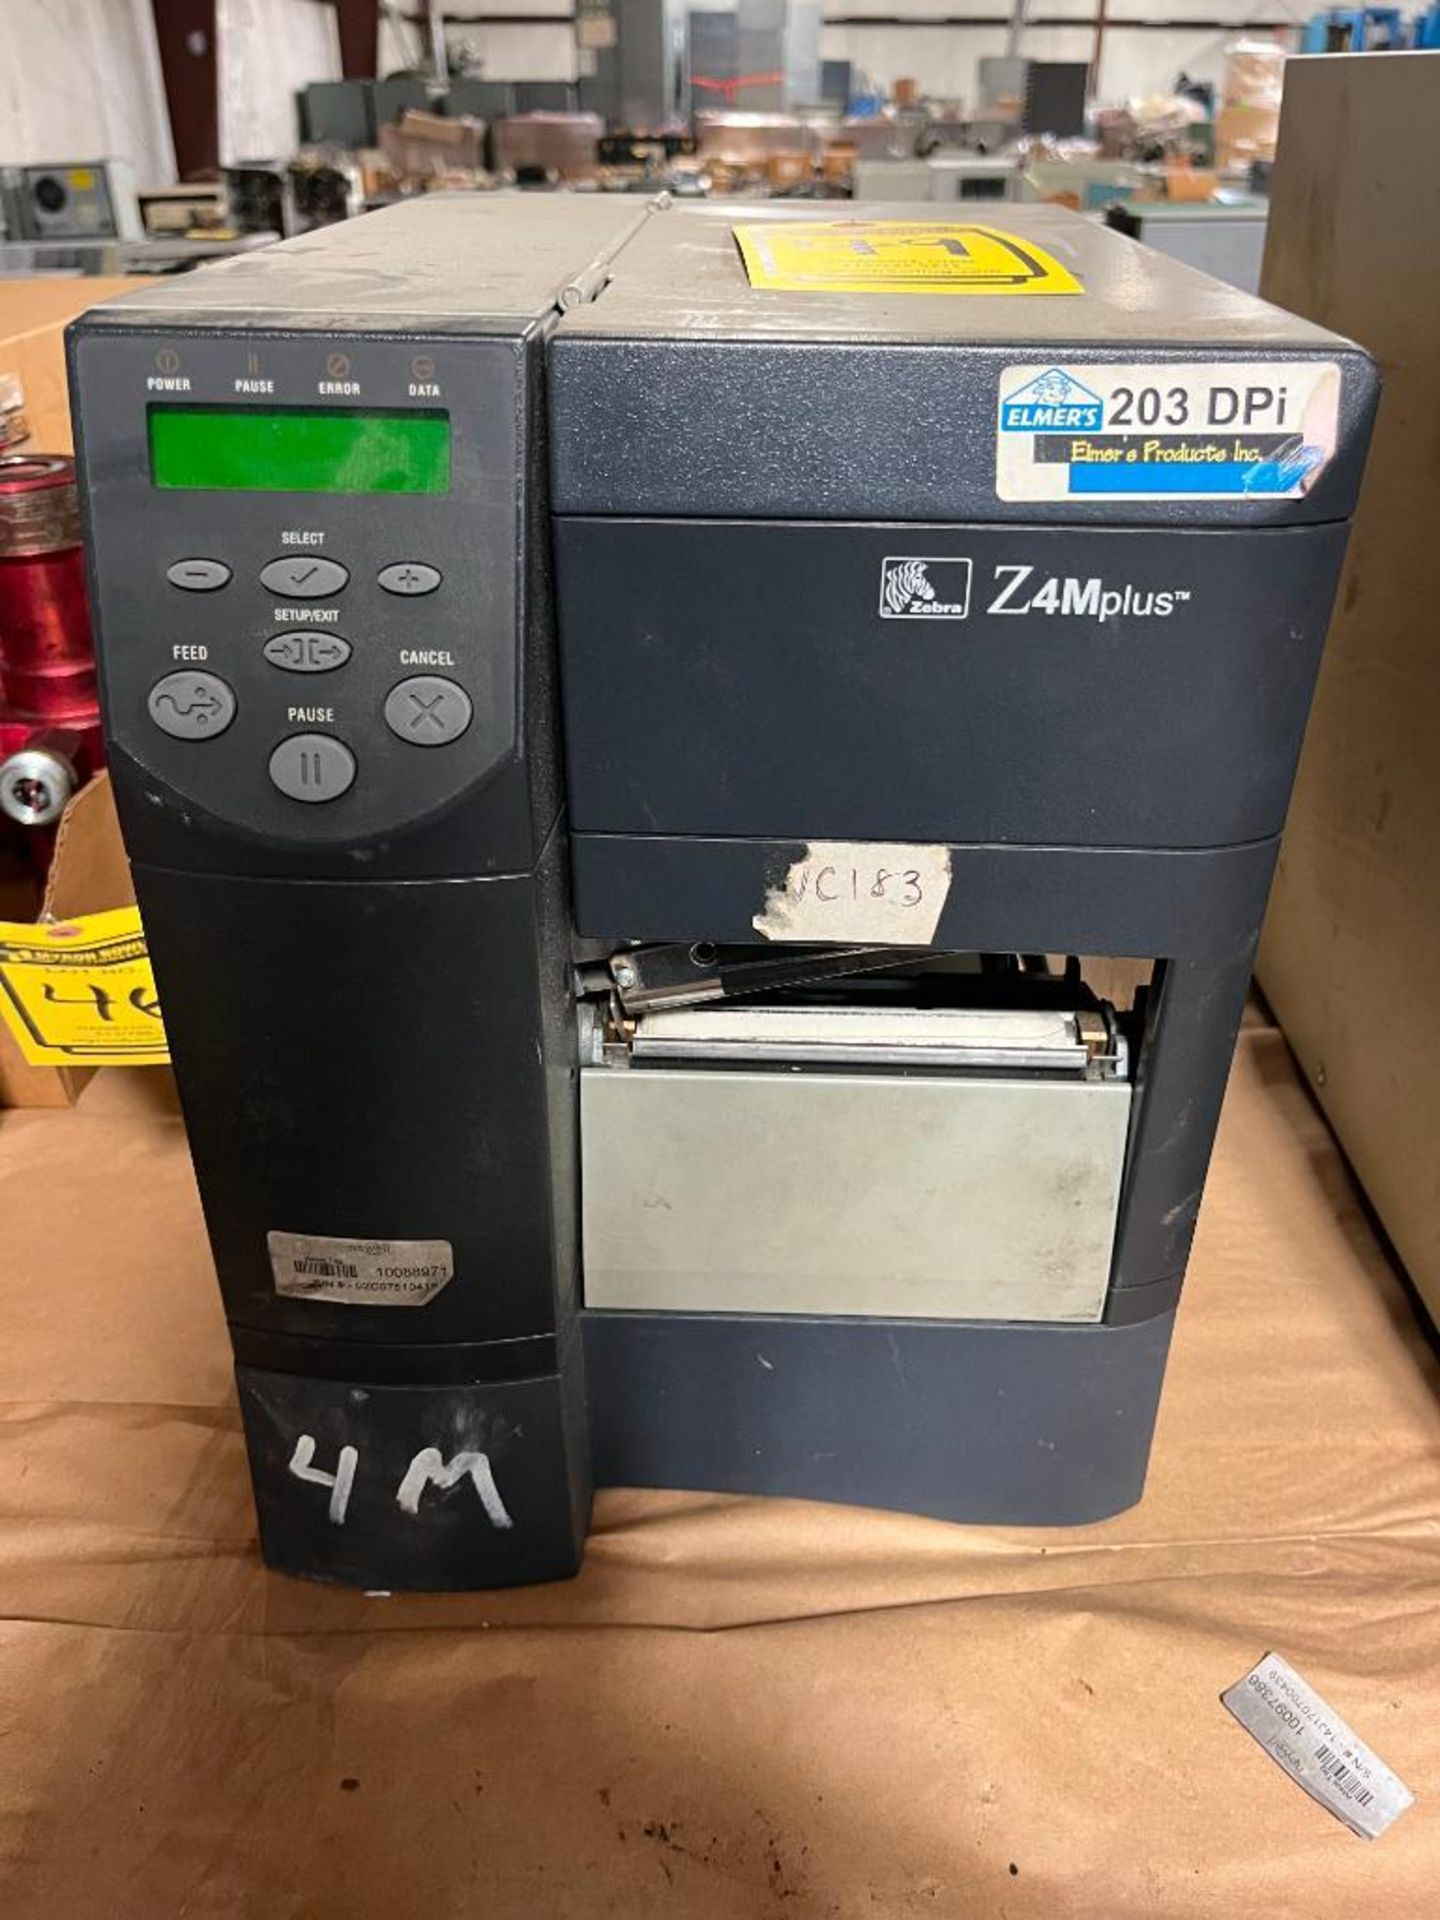 Zebra Printer, Model Z4MPLUS